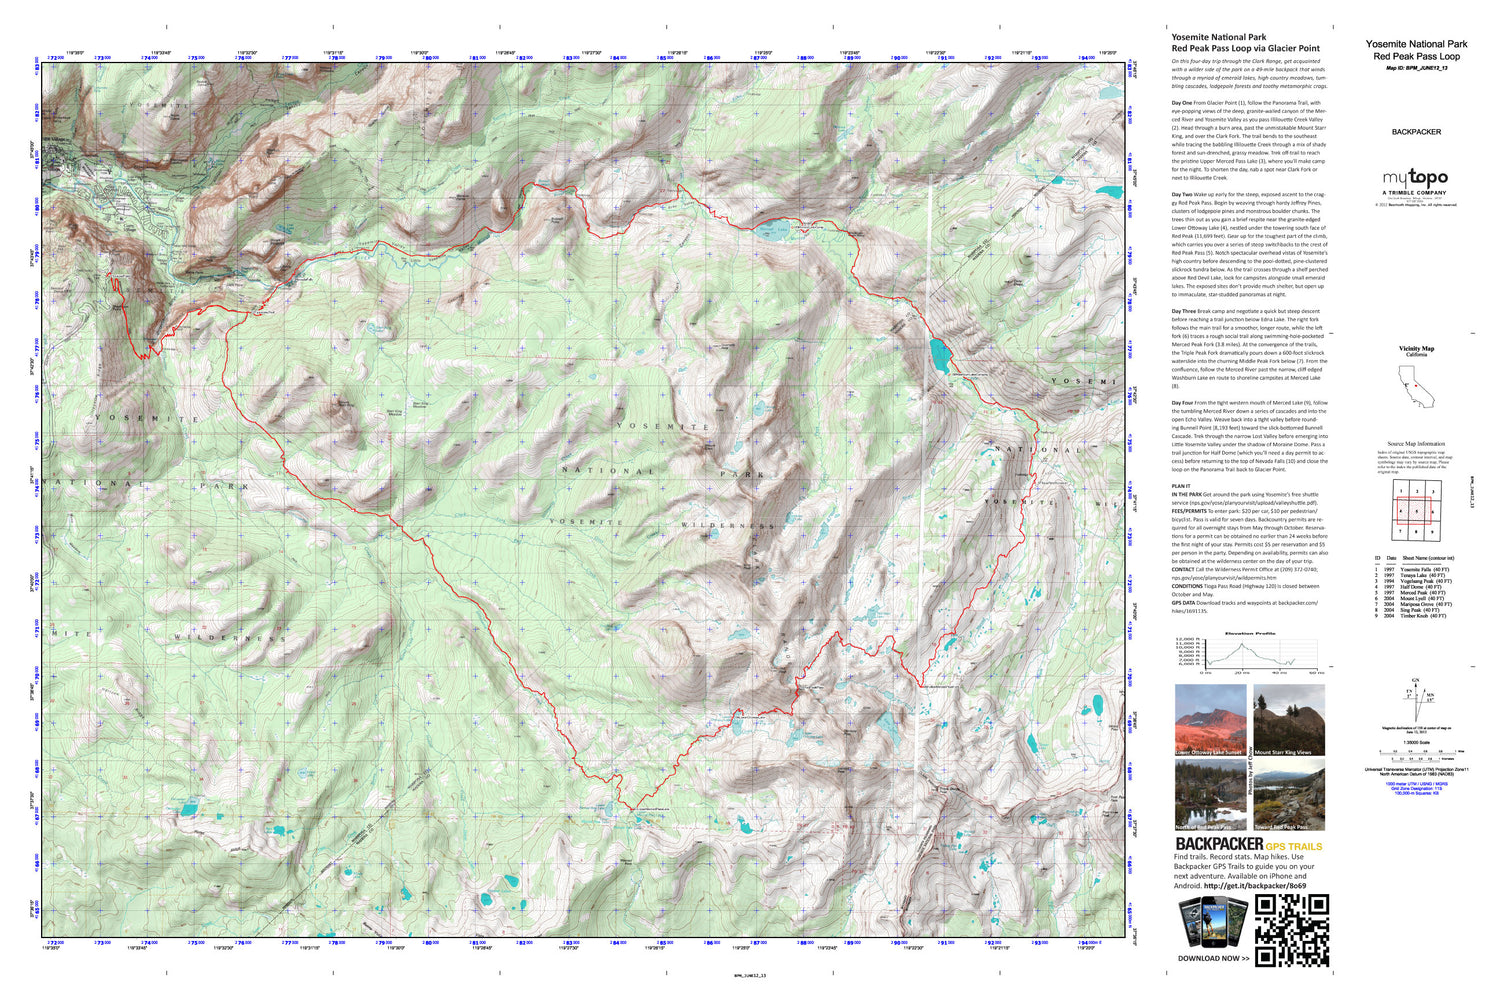 Red Peak Pass Loop Map (Yosemite NP, California) Image